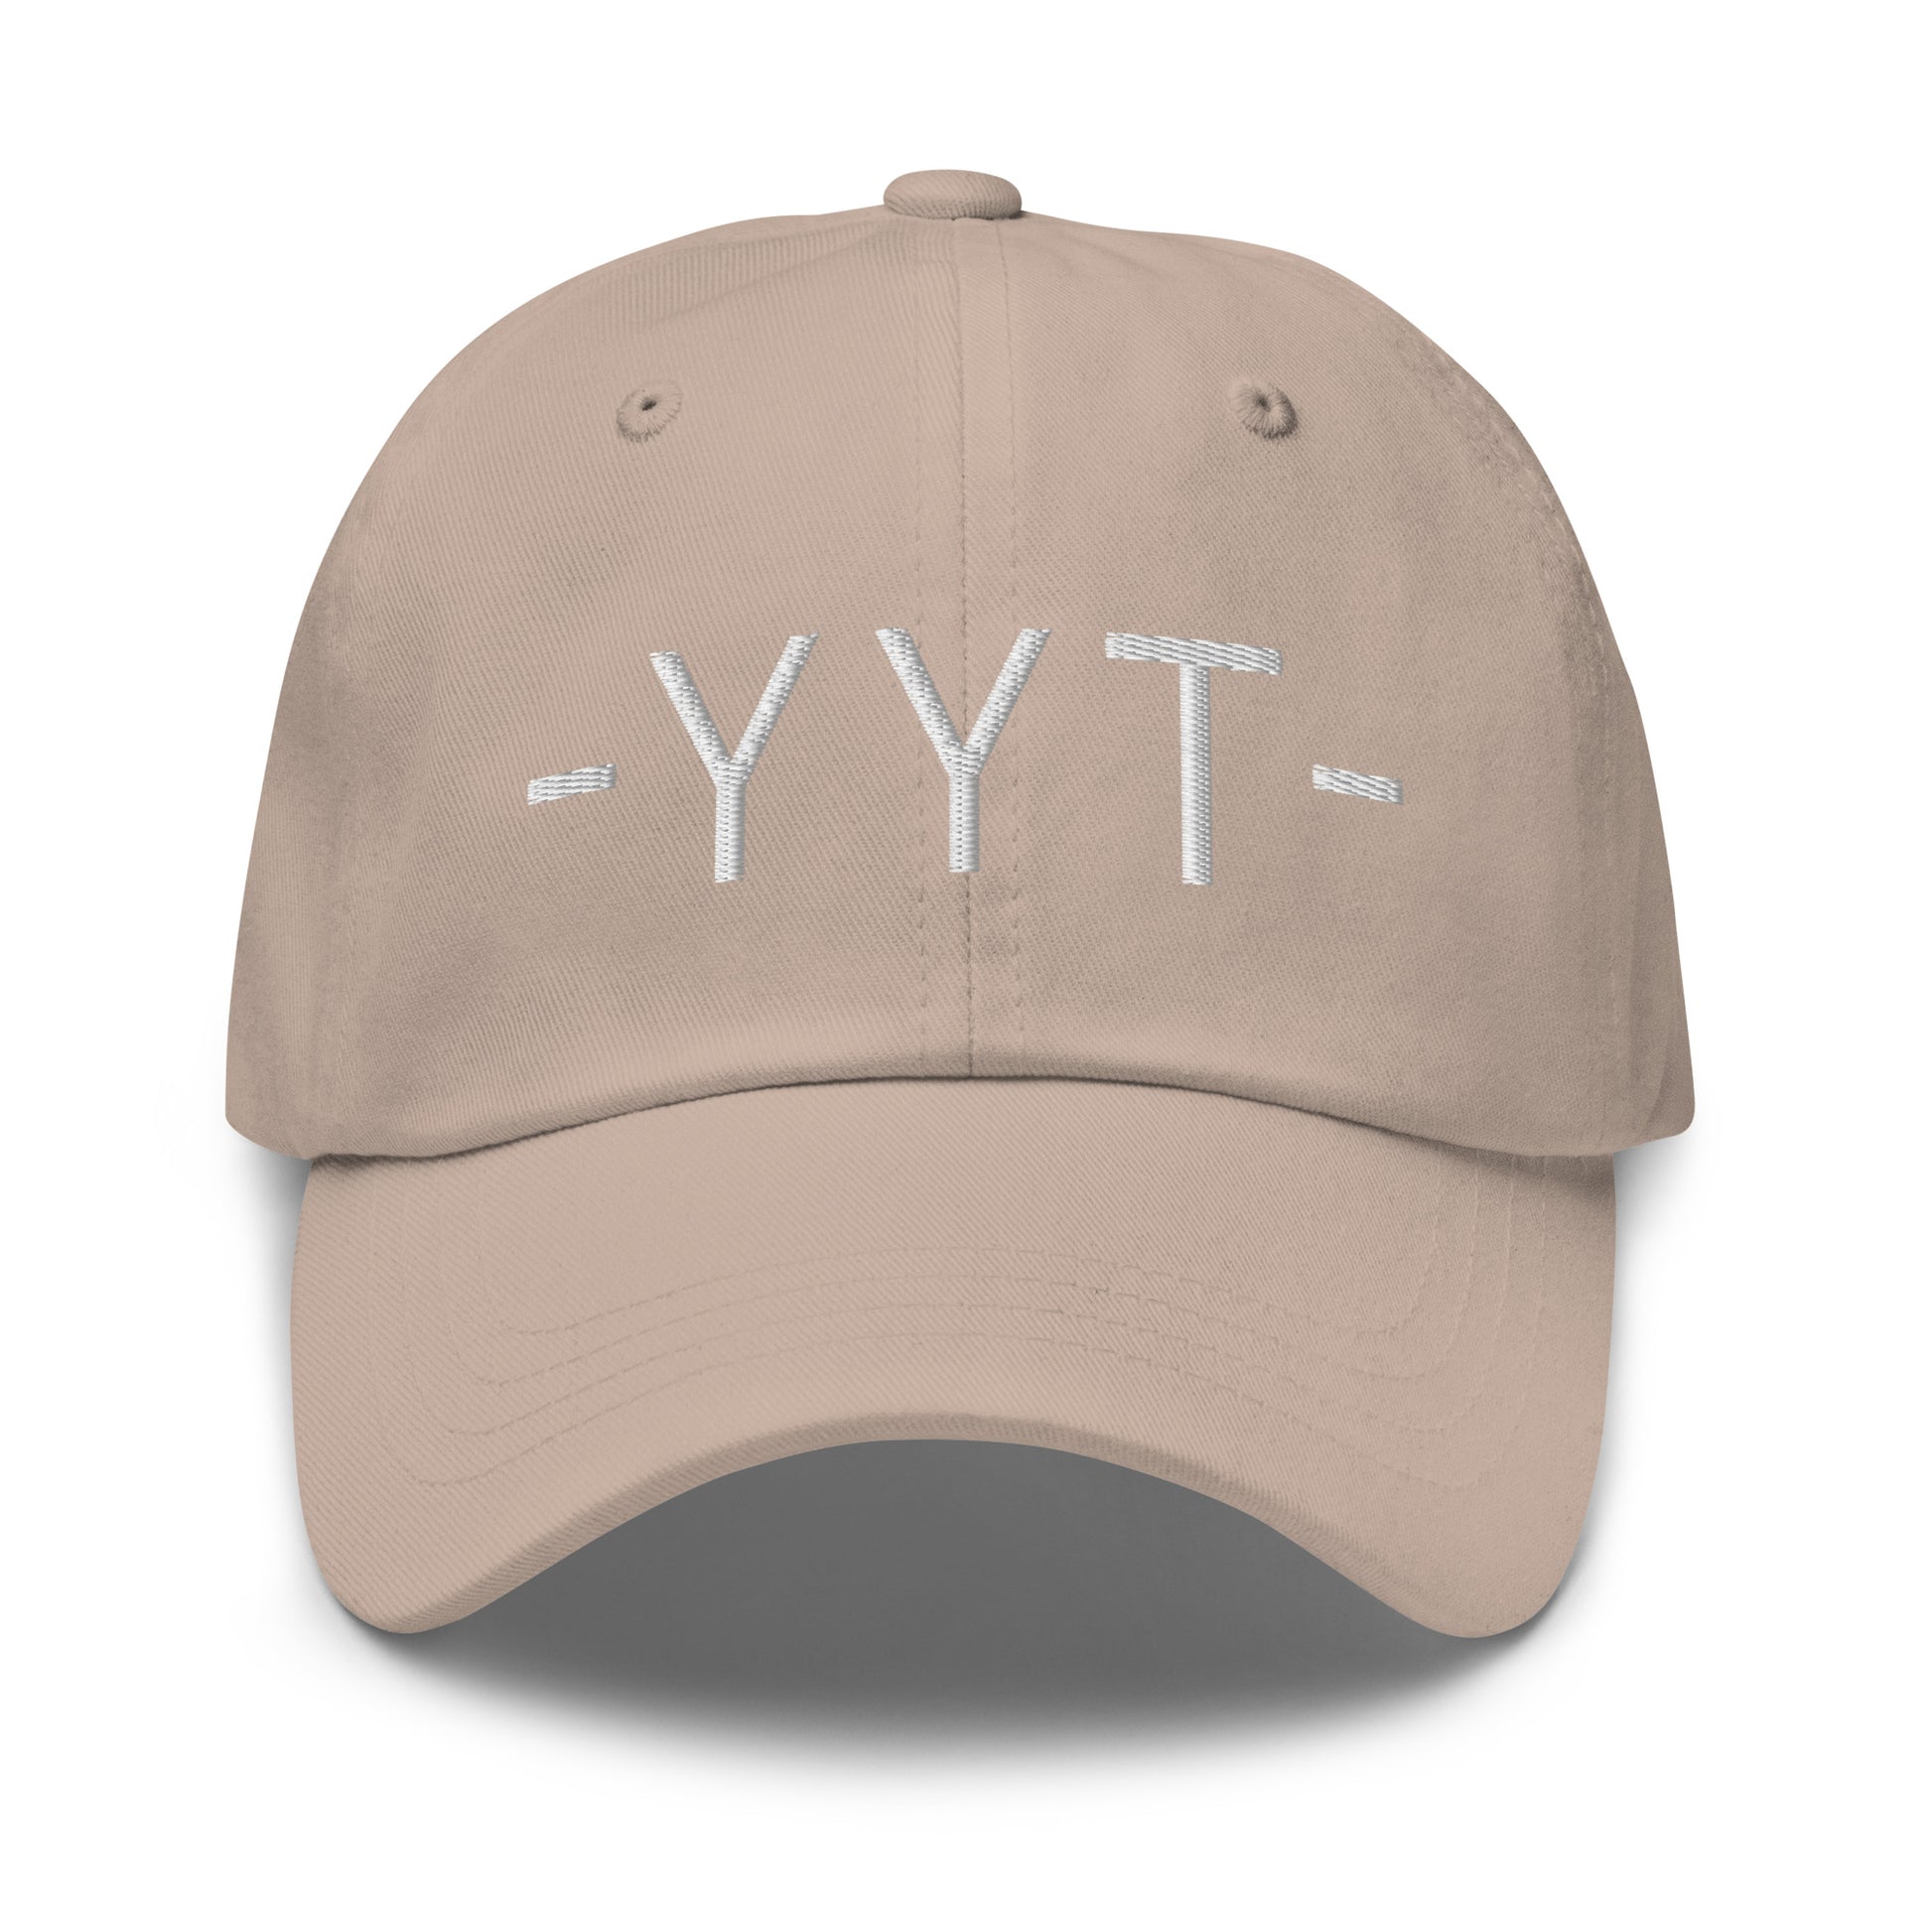 Souvenir Baseball Cap - White • YYT St. John's • YHM Designs - Image 23